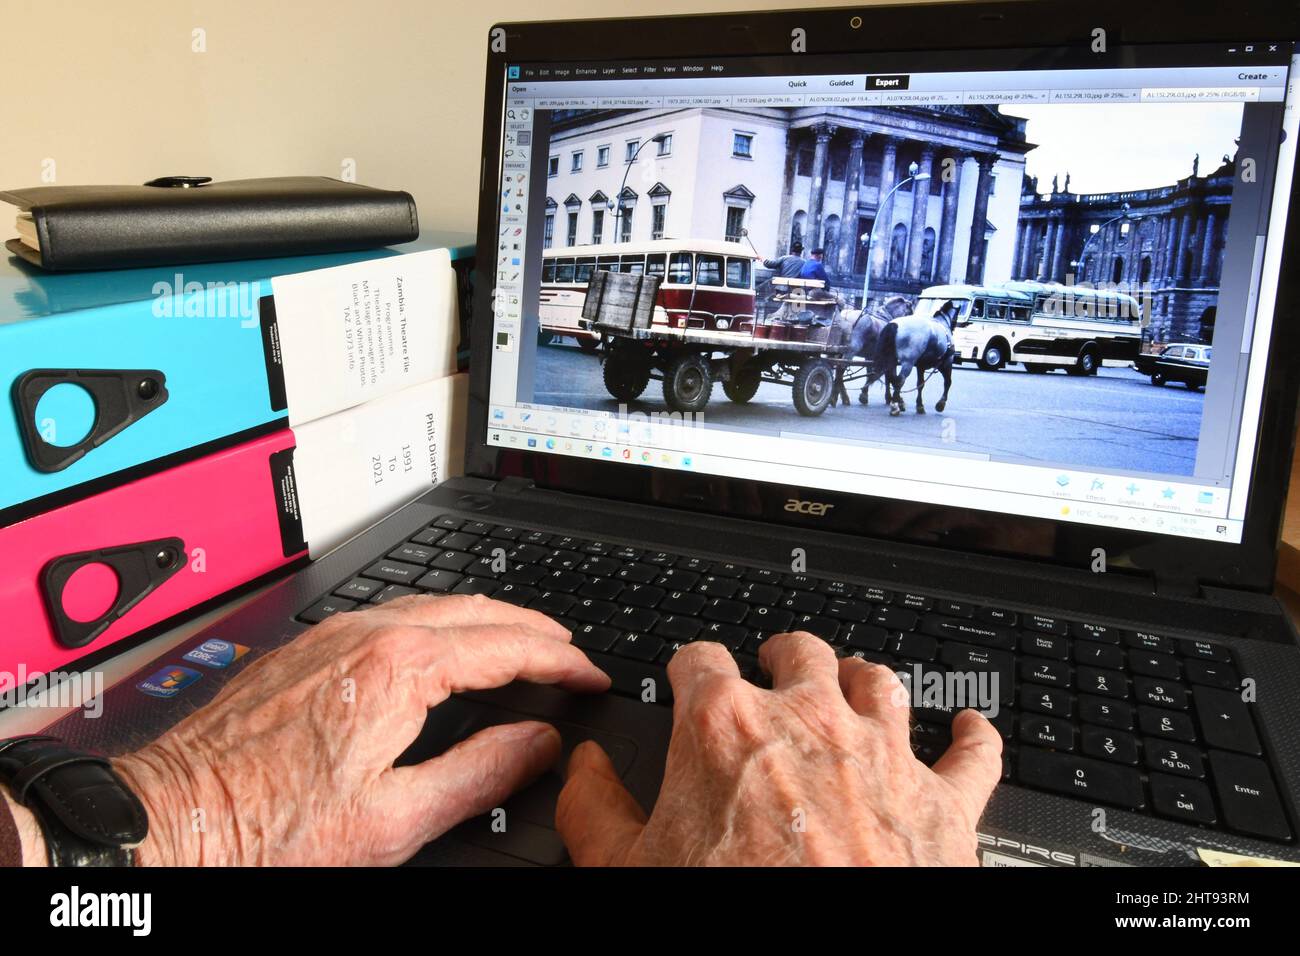 Alte Hände an einer Computertastatur, die Bilder finden, um angenehme Erinnerungen auszulösen, wenn man älter wird. Der Transport in Ost-Berlin war interessant und alt Stockfoto